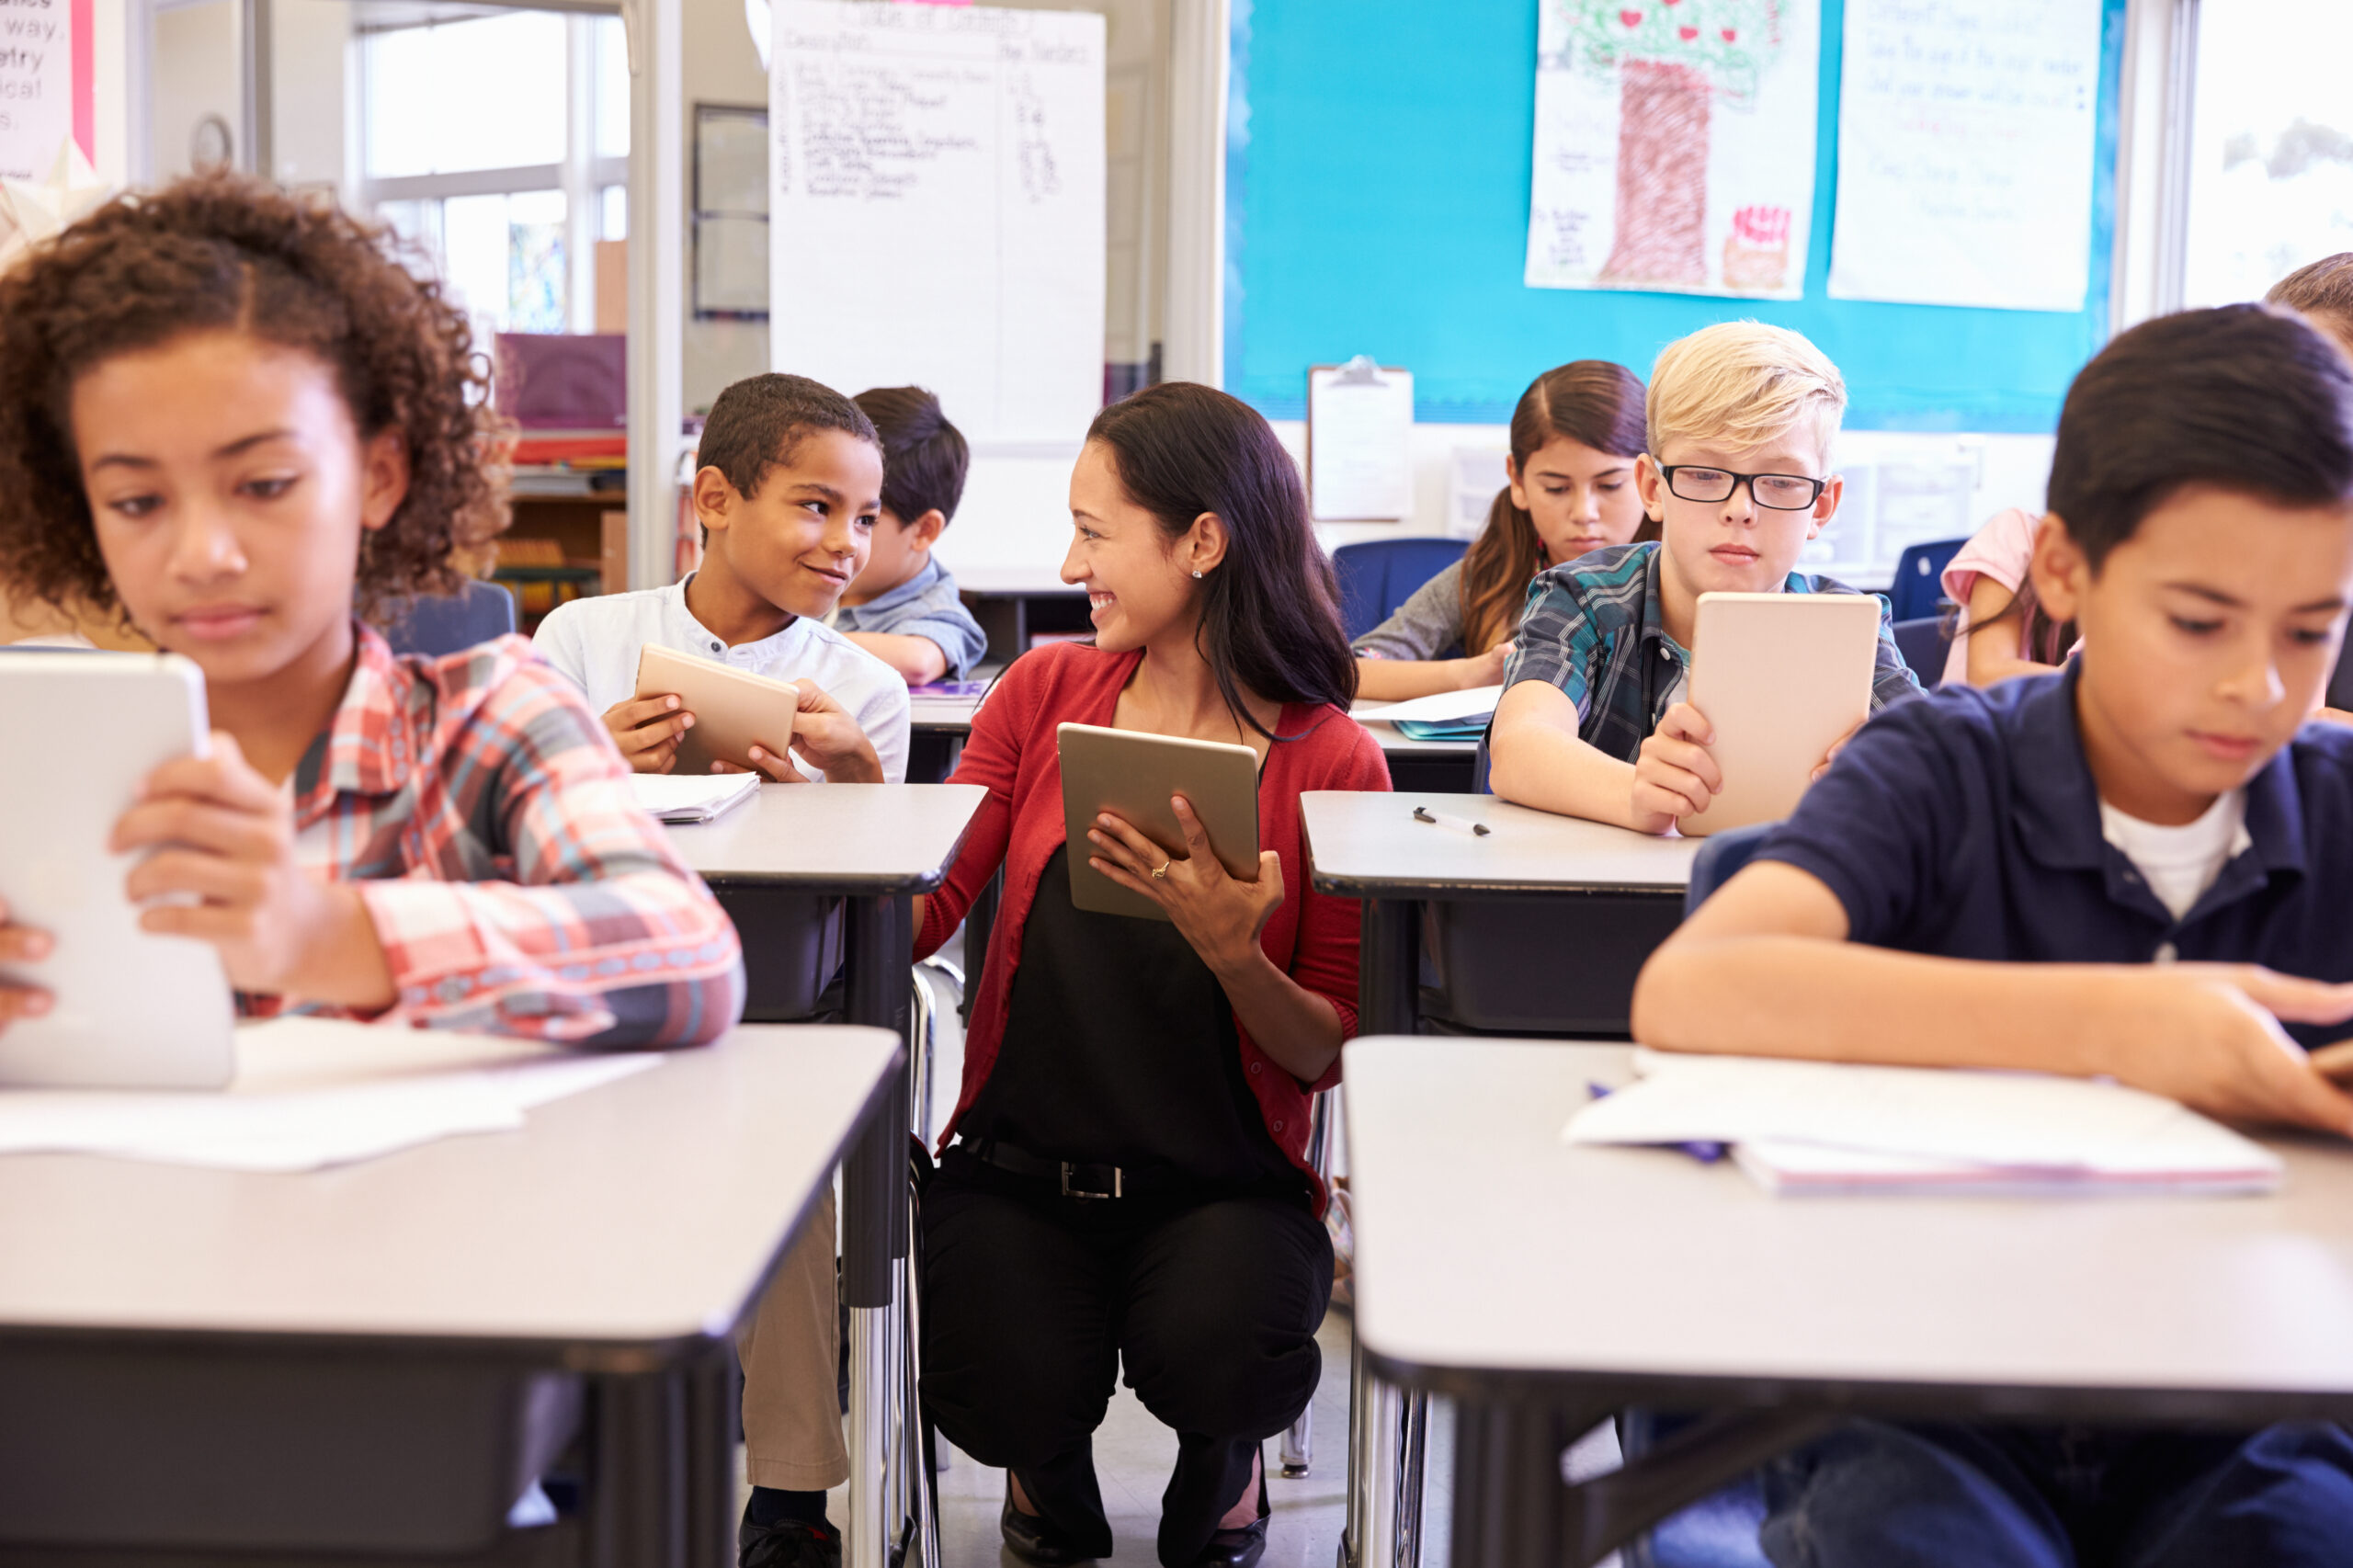 des élèves assis à des bureaux et utilisant des tablettes dans une salle de classe avec un enseignant agenouillé à proximité